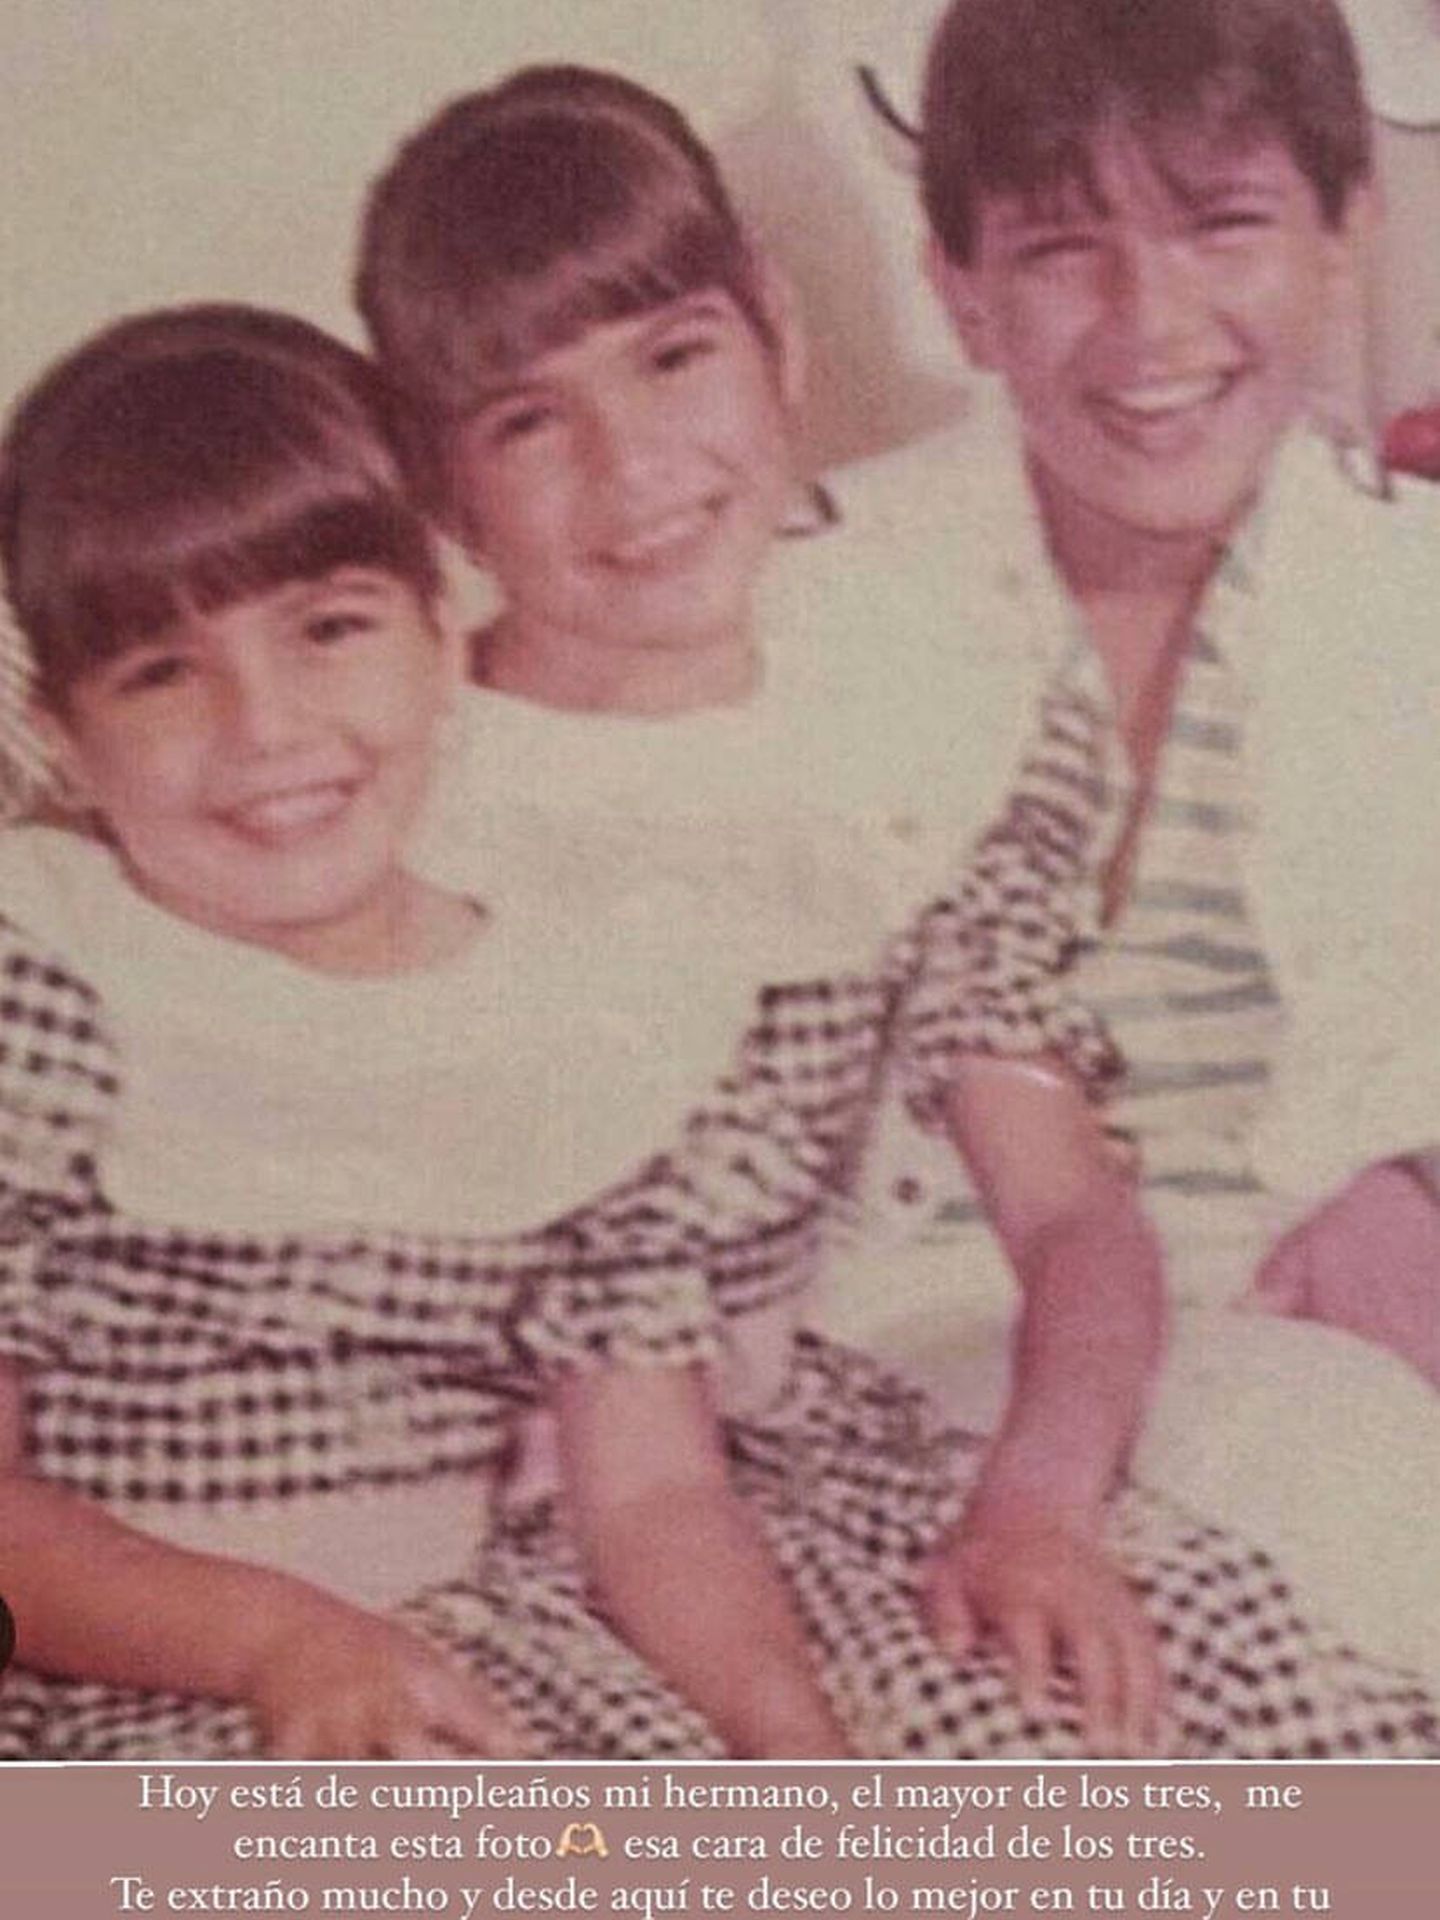  Virgina Troconis y sus hermanos. (Instagram/@virtroconis)